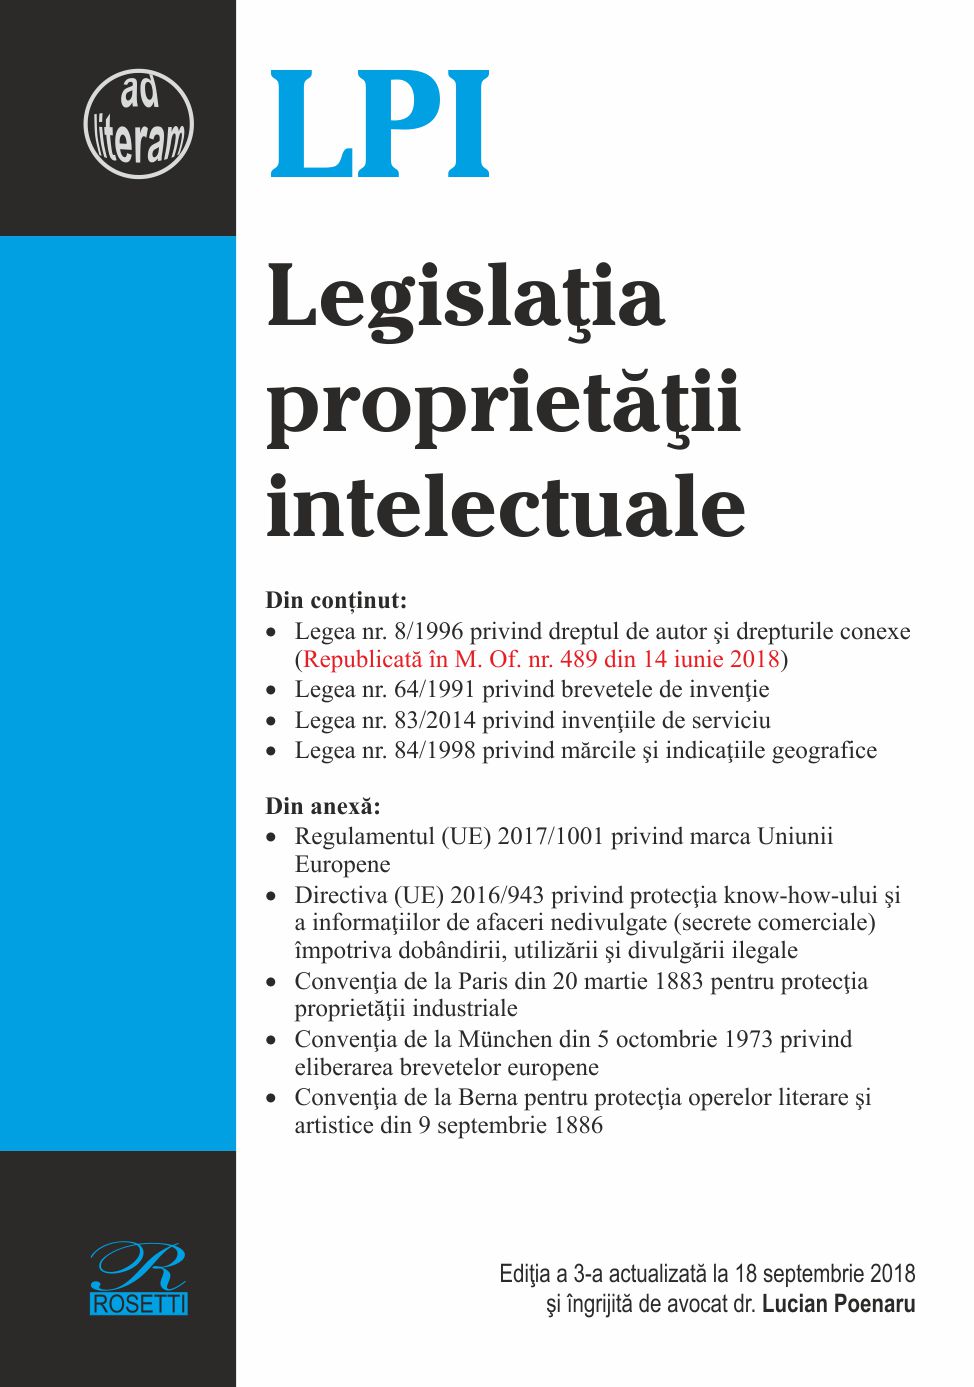 Legislatia proprietatii intelectuale Ed. 3 Act. 18 Septembrie 2018